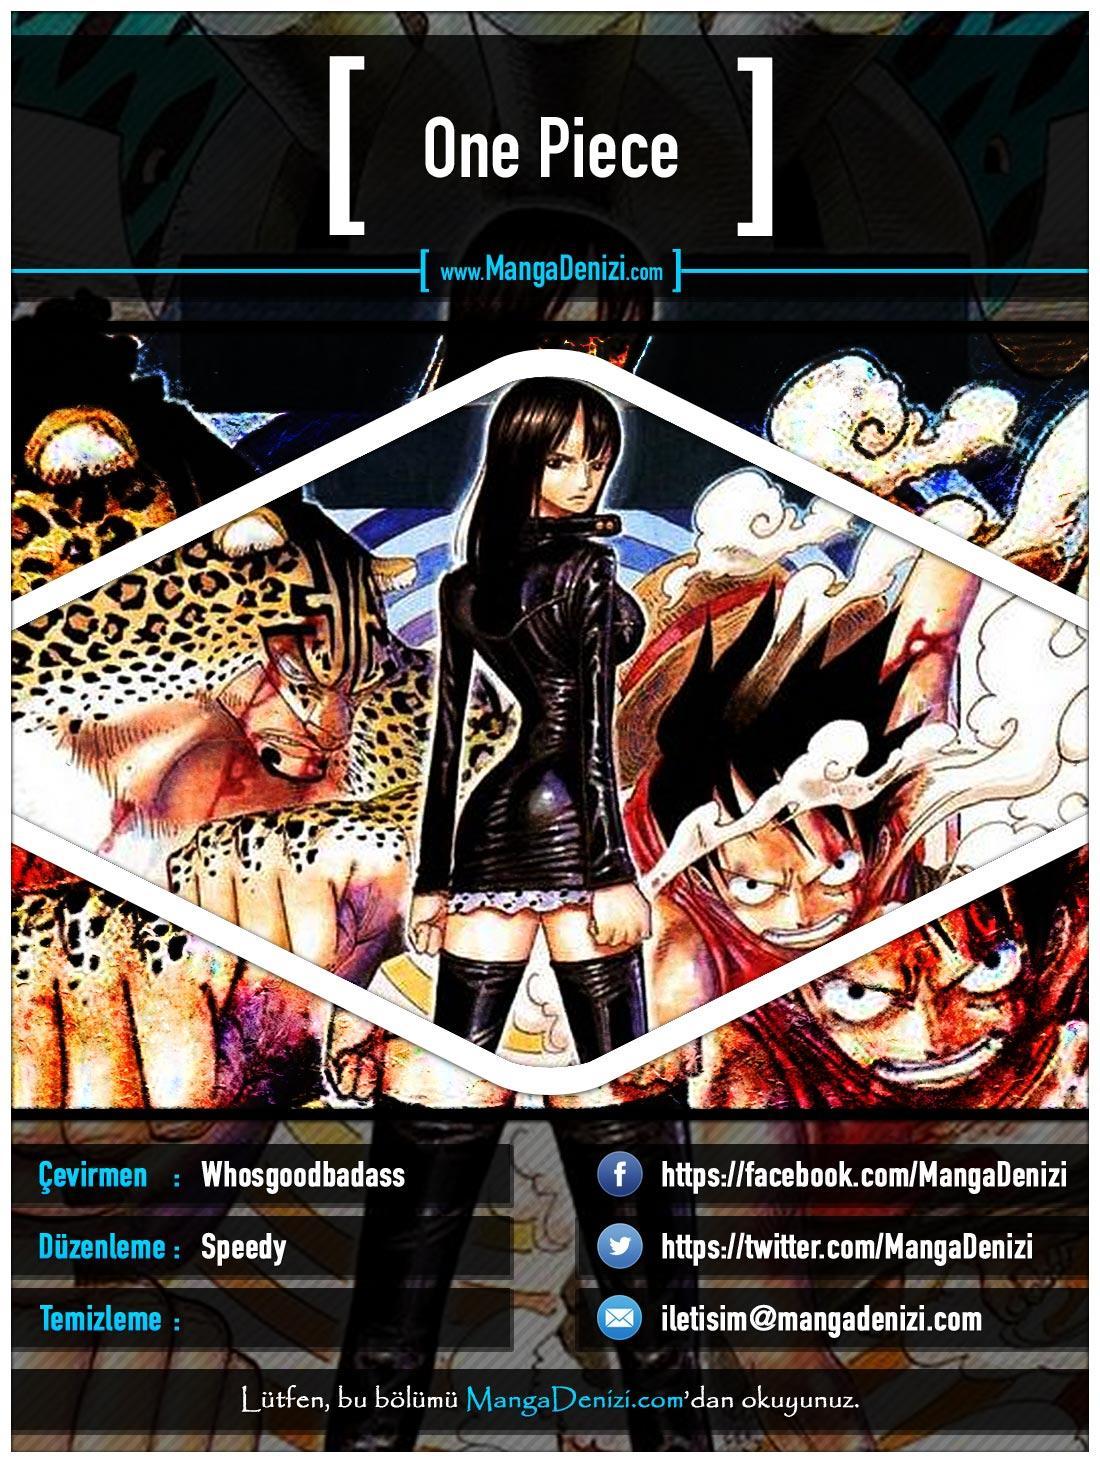 One Piece [Renkli] mangasının 0424 bölümünün 1. sayfasını okuyorsunuz.